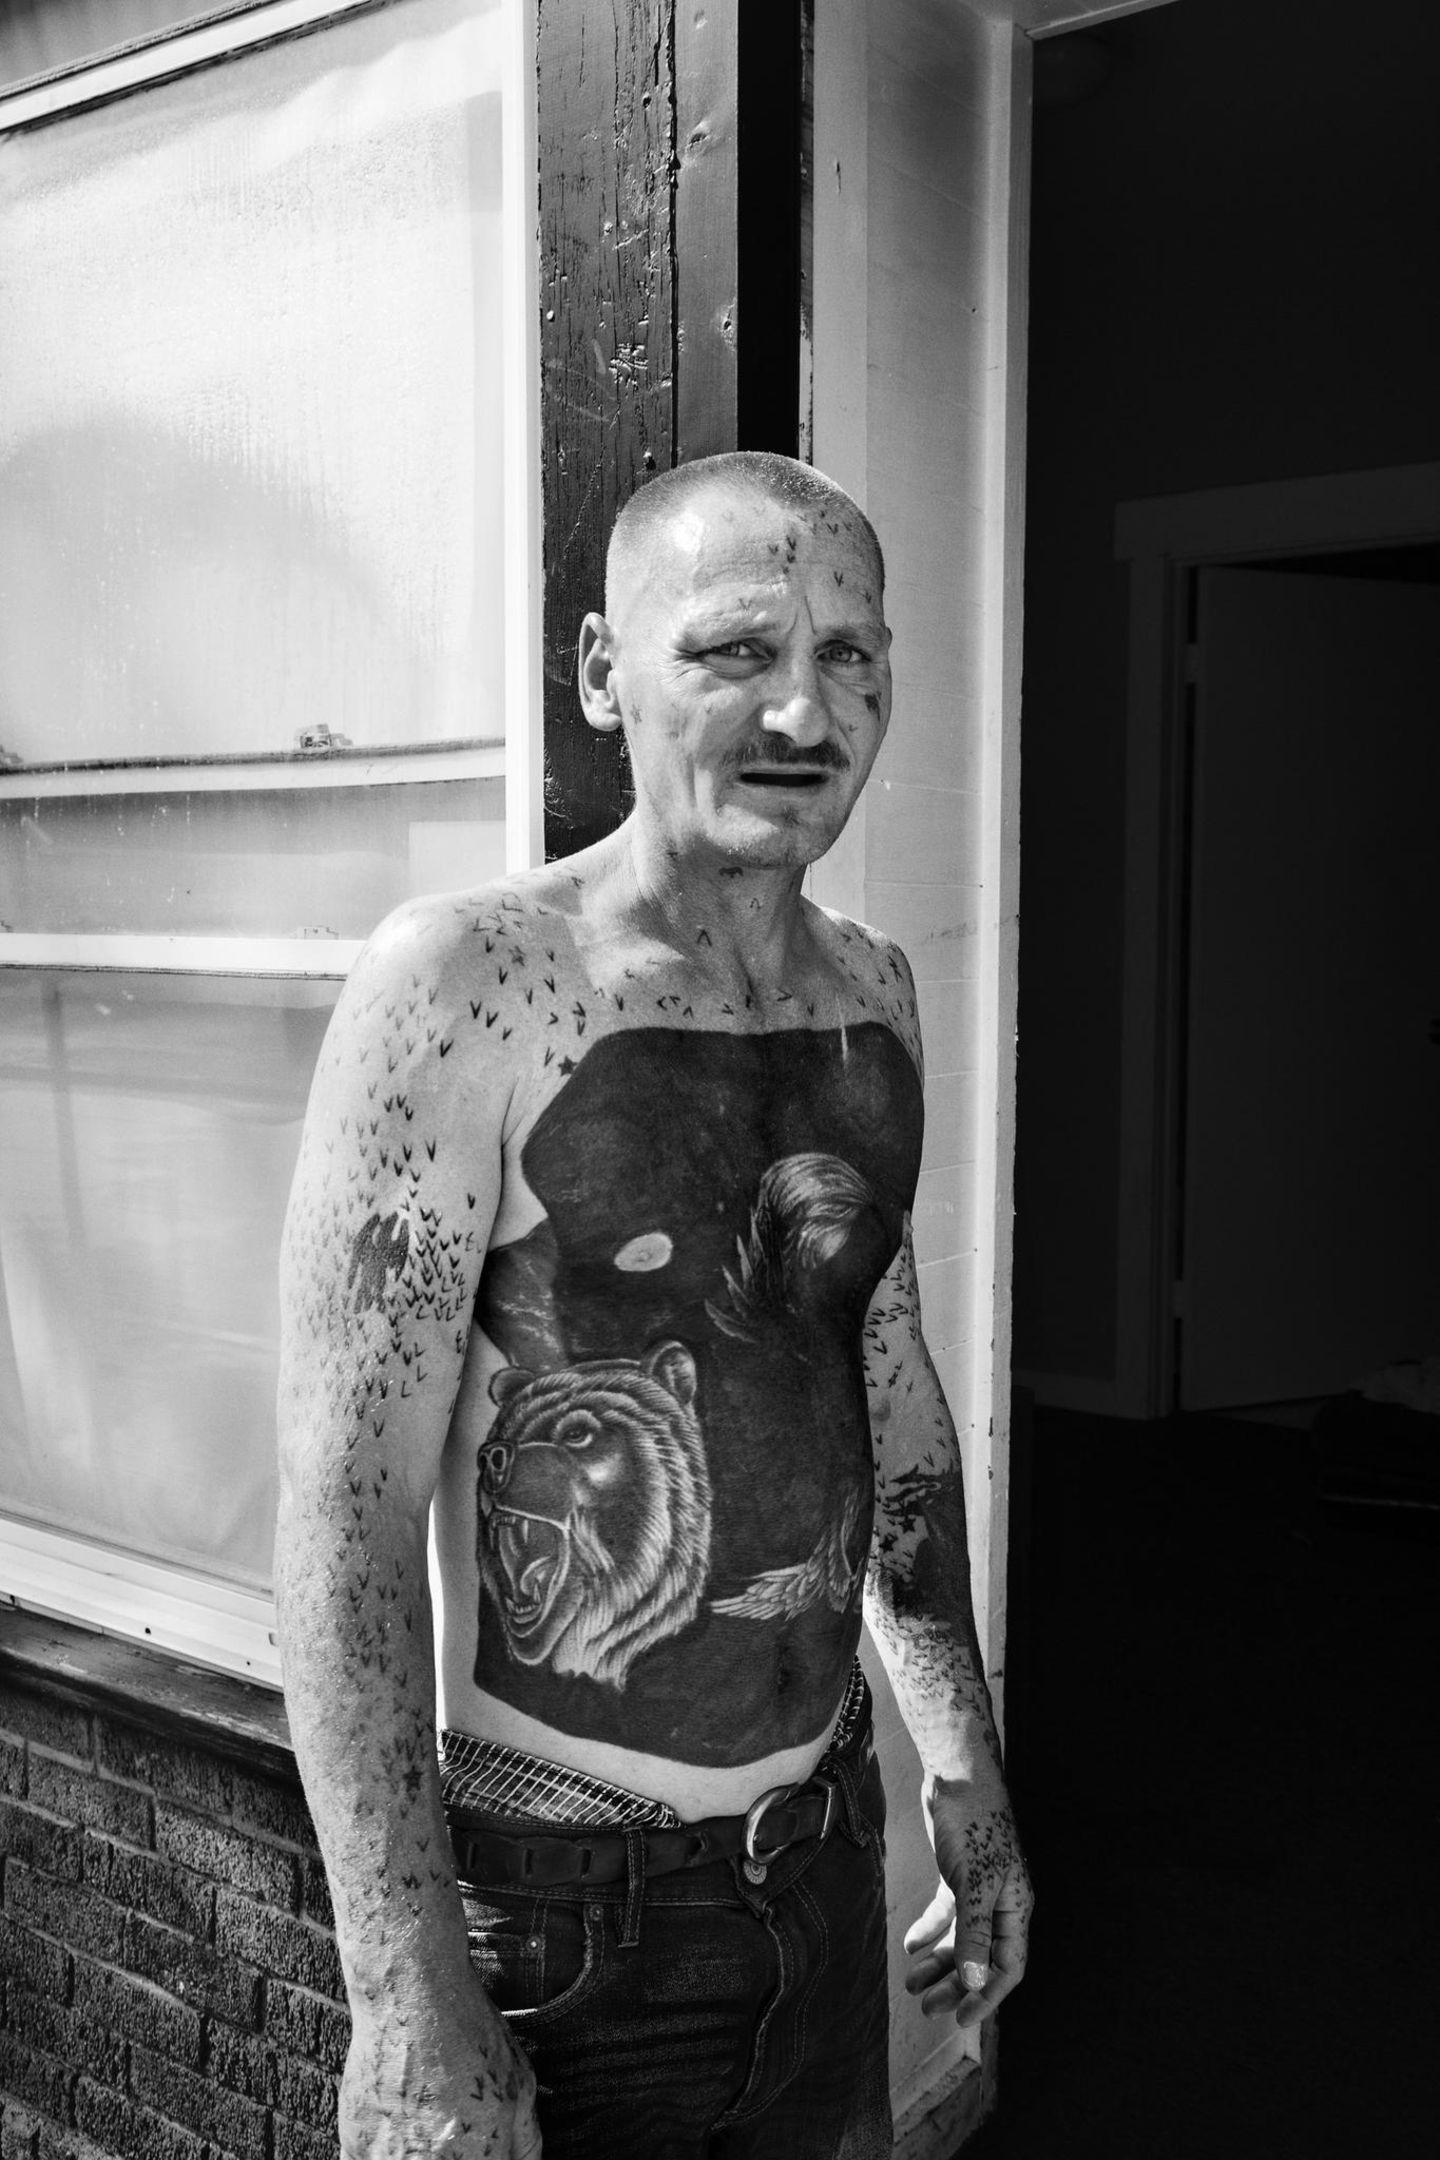 Ein tätowierter Mann mit einem nächtlichen Tattoomotiv auf dem Bauch